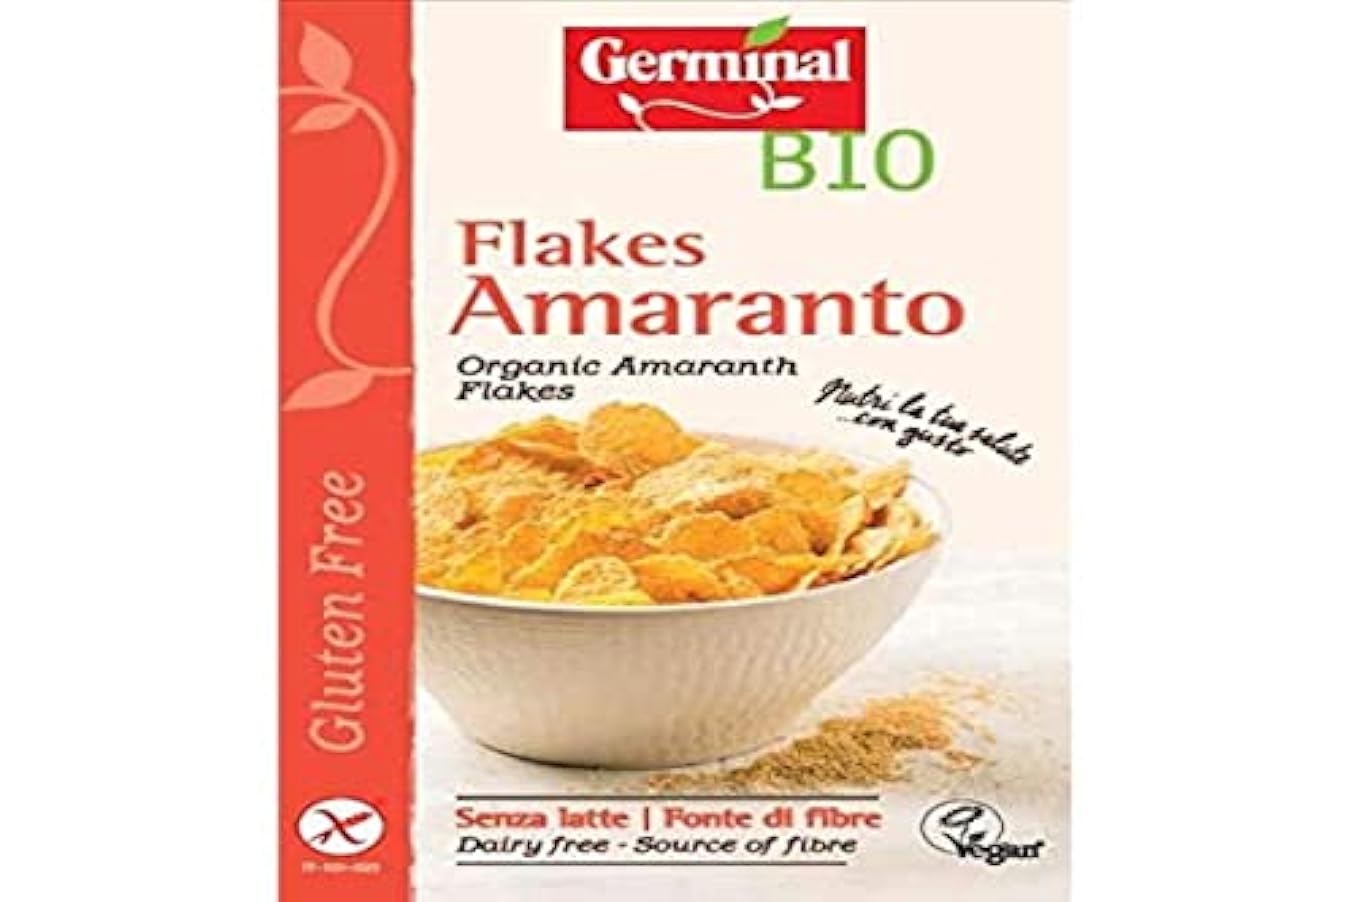 Germinal Bio Amaranto Flakes - 8 confezioni da 200 gr - 1600 gr, Senza glutine 985078533